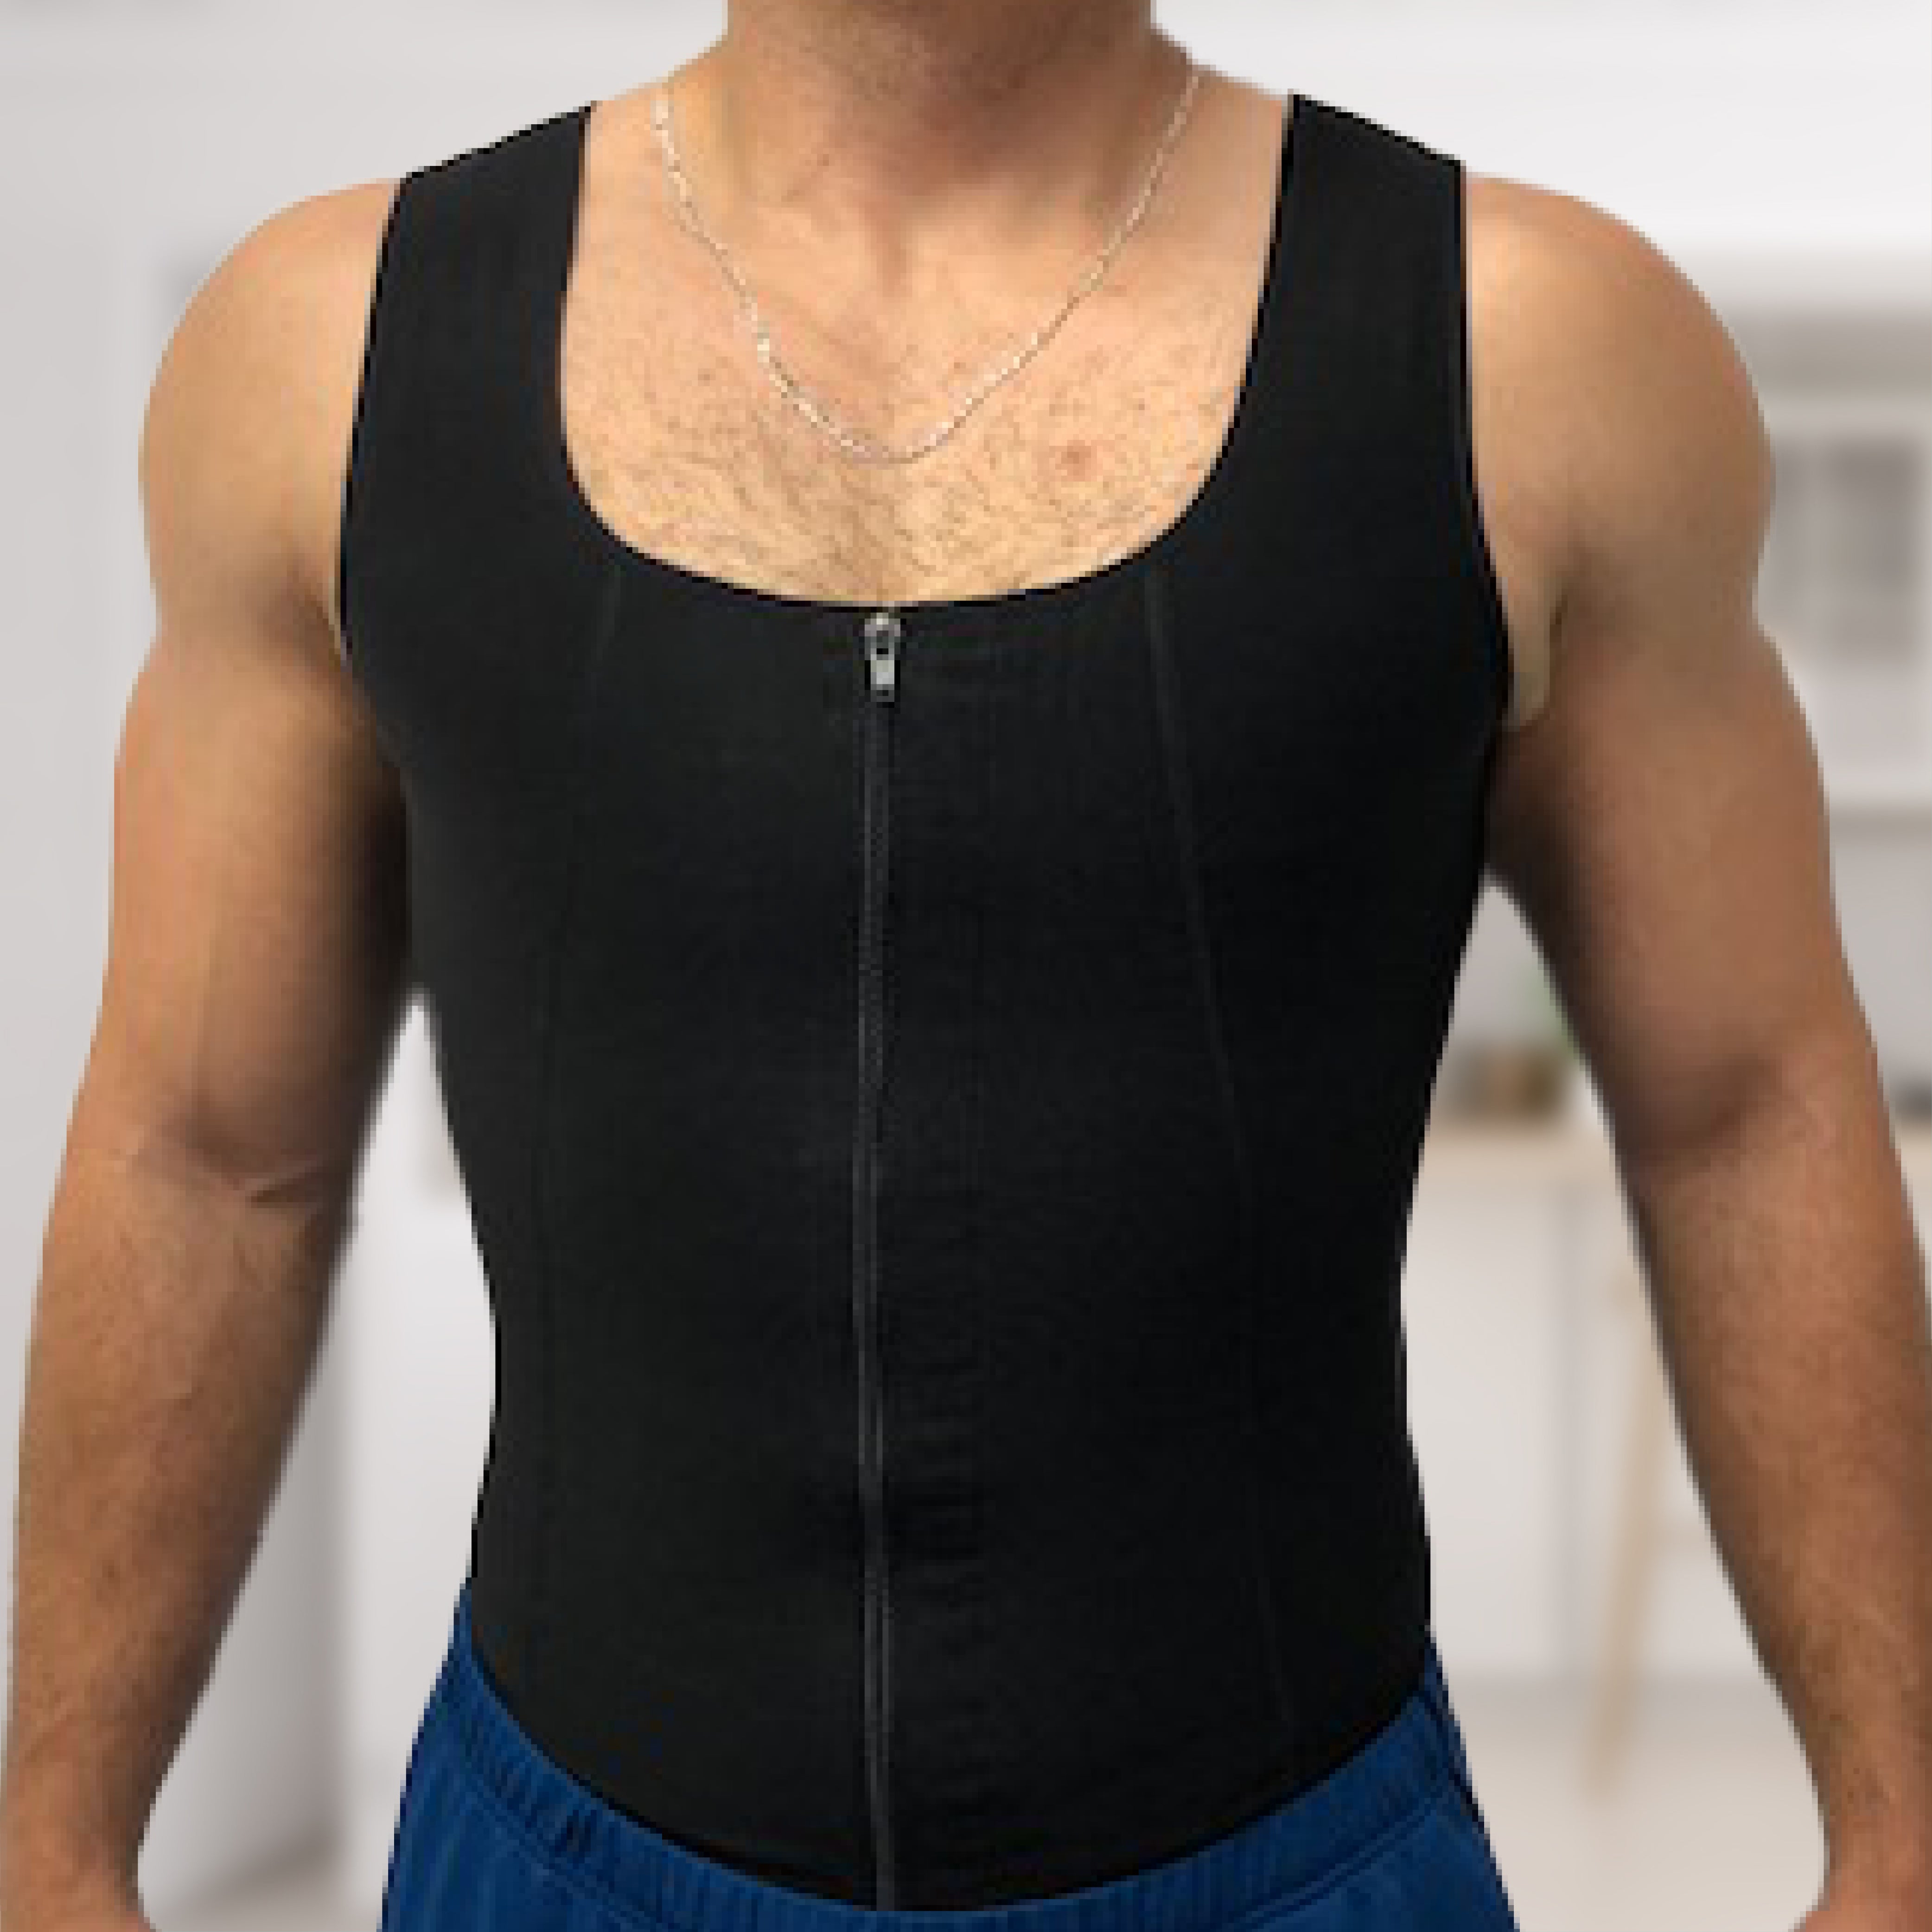 Men's Compression Vest - Shop Now – Dr. Shape